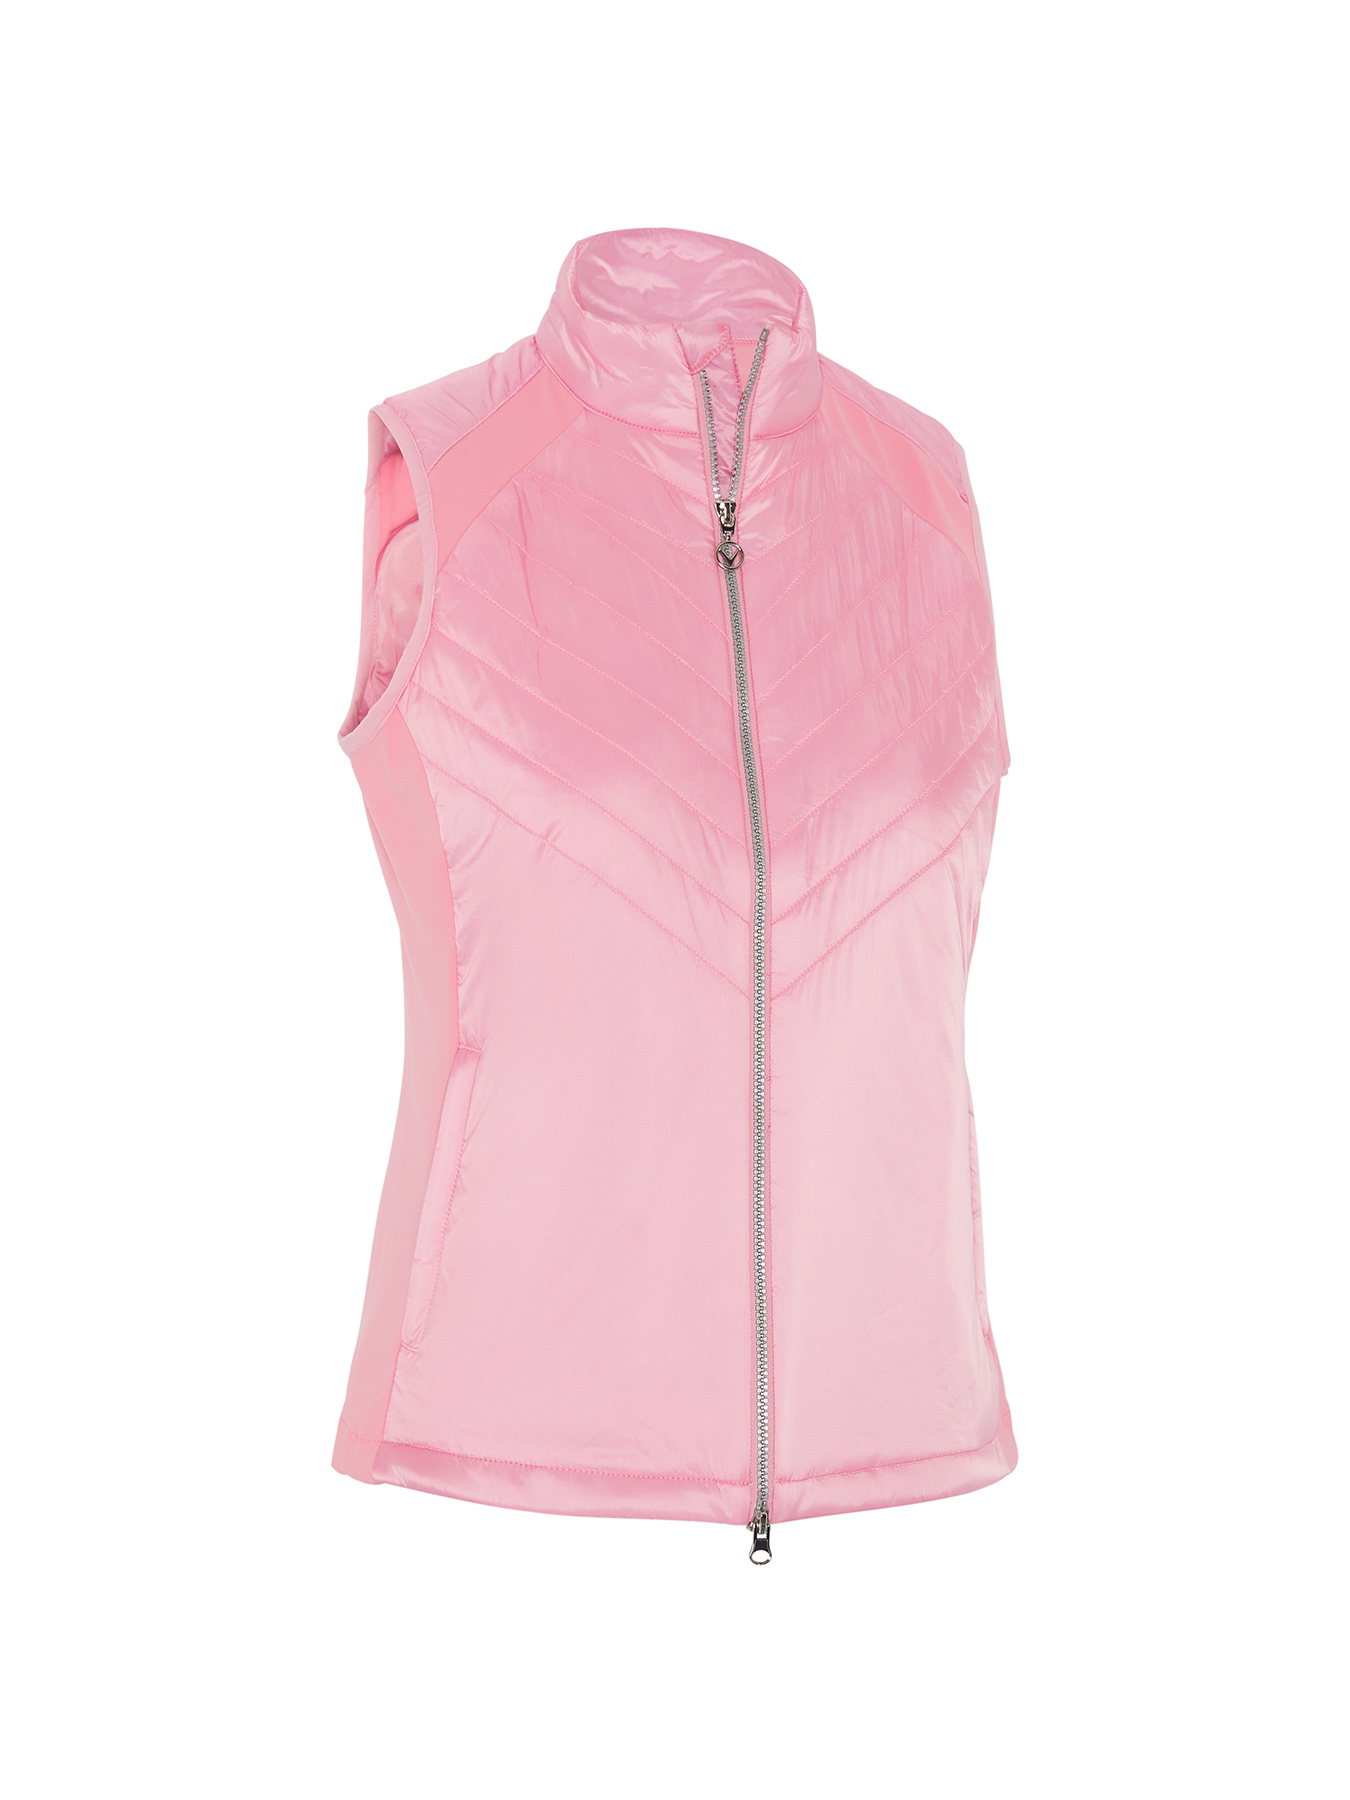 Callaway Chev Primaloft dámská golfová vesta, světle růžová, vel. M